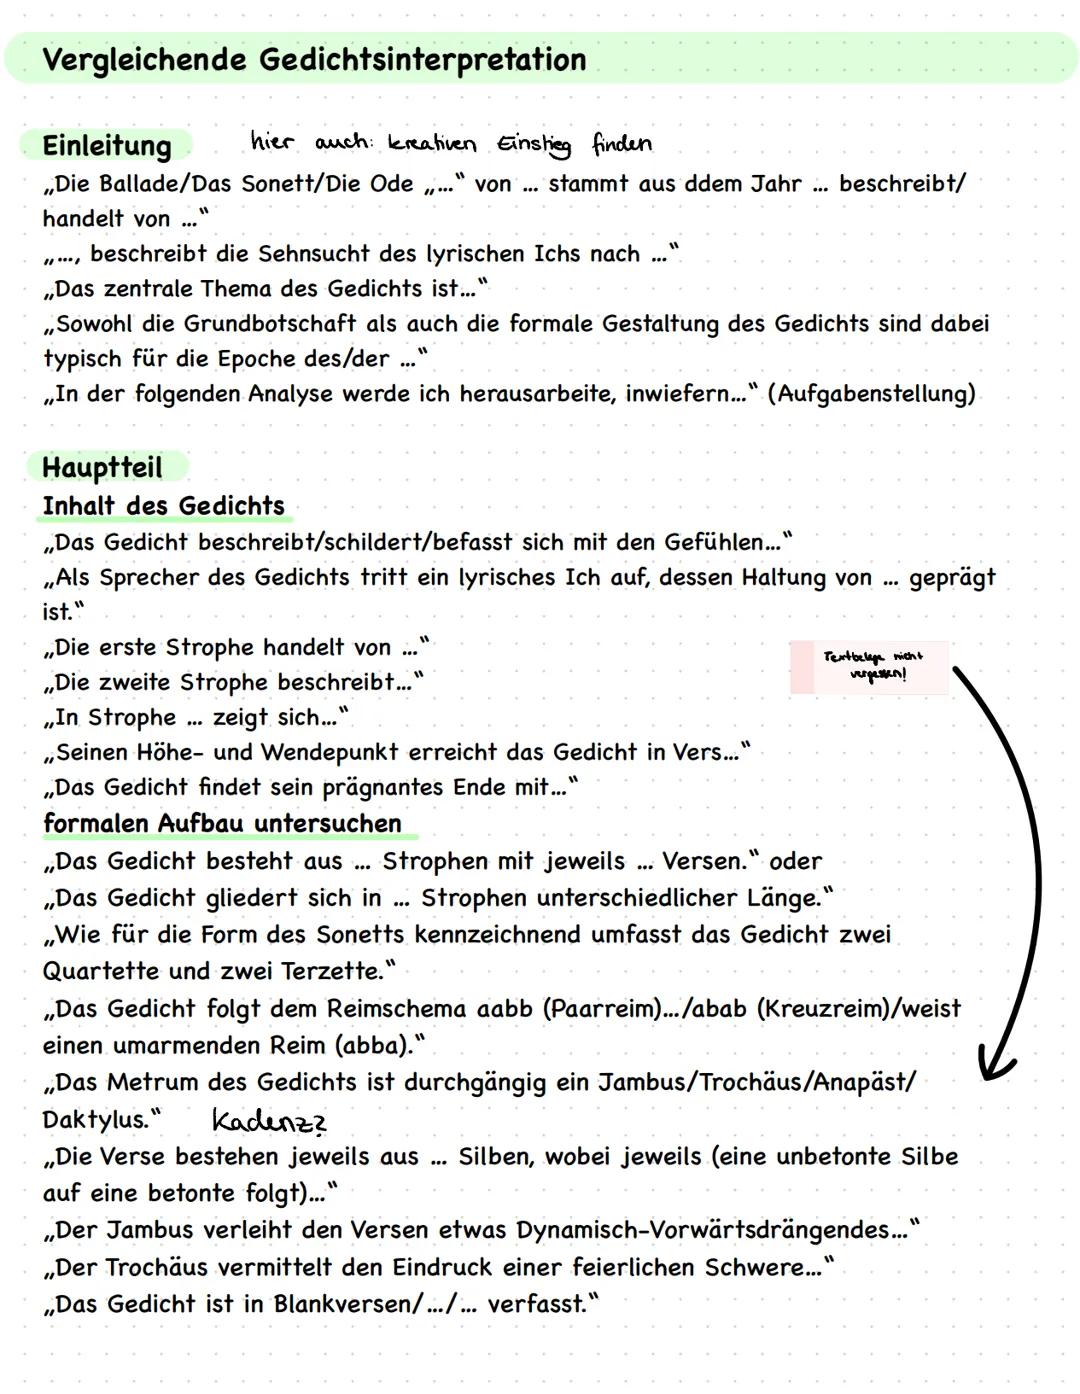 Dramenszenenanalyse
Lernzettel: Vorprüfung Deutsch
Einleitung:
Kreativer Einstieg mit Zitat
Titel, Autor, Thema, Textsorte
,,In dem vorliege